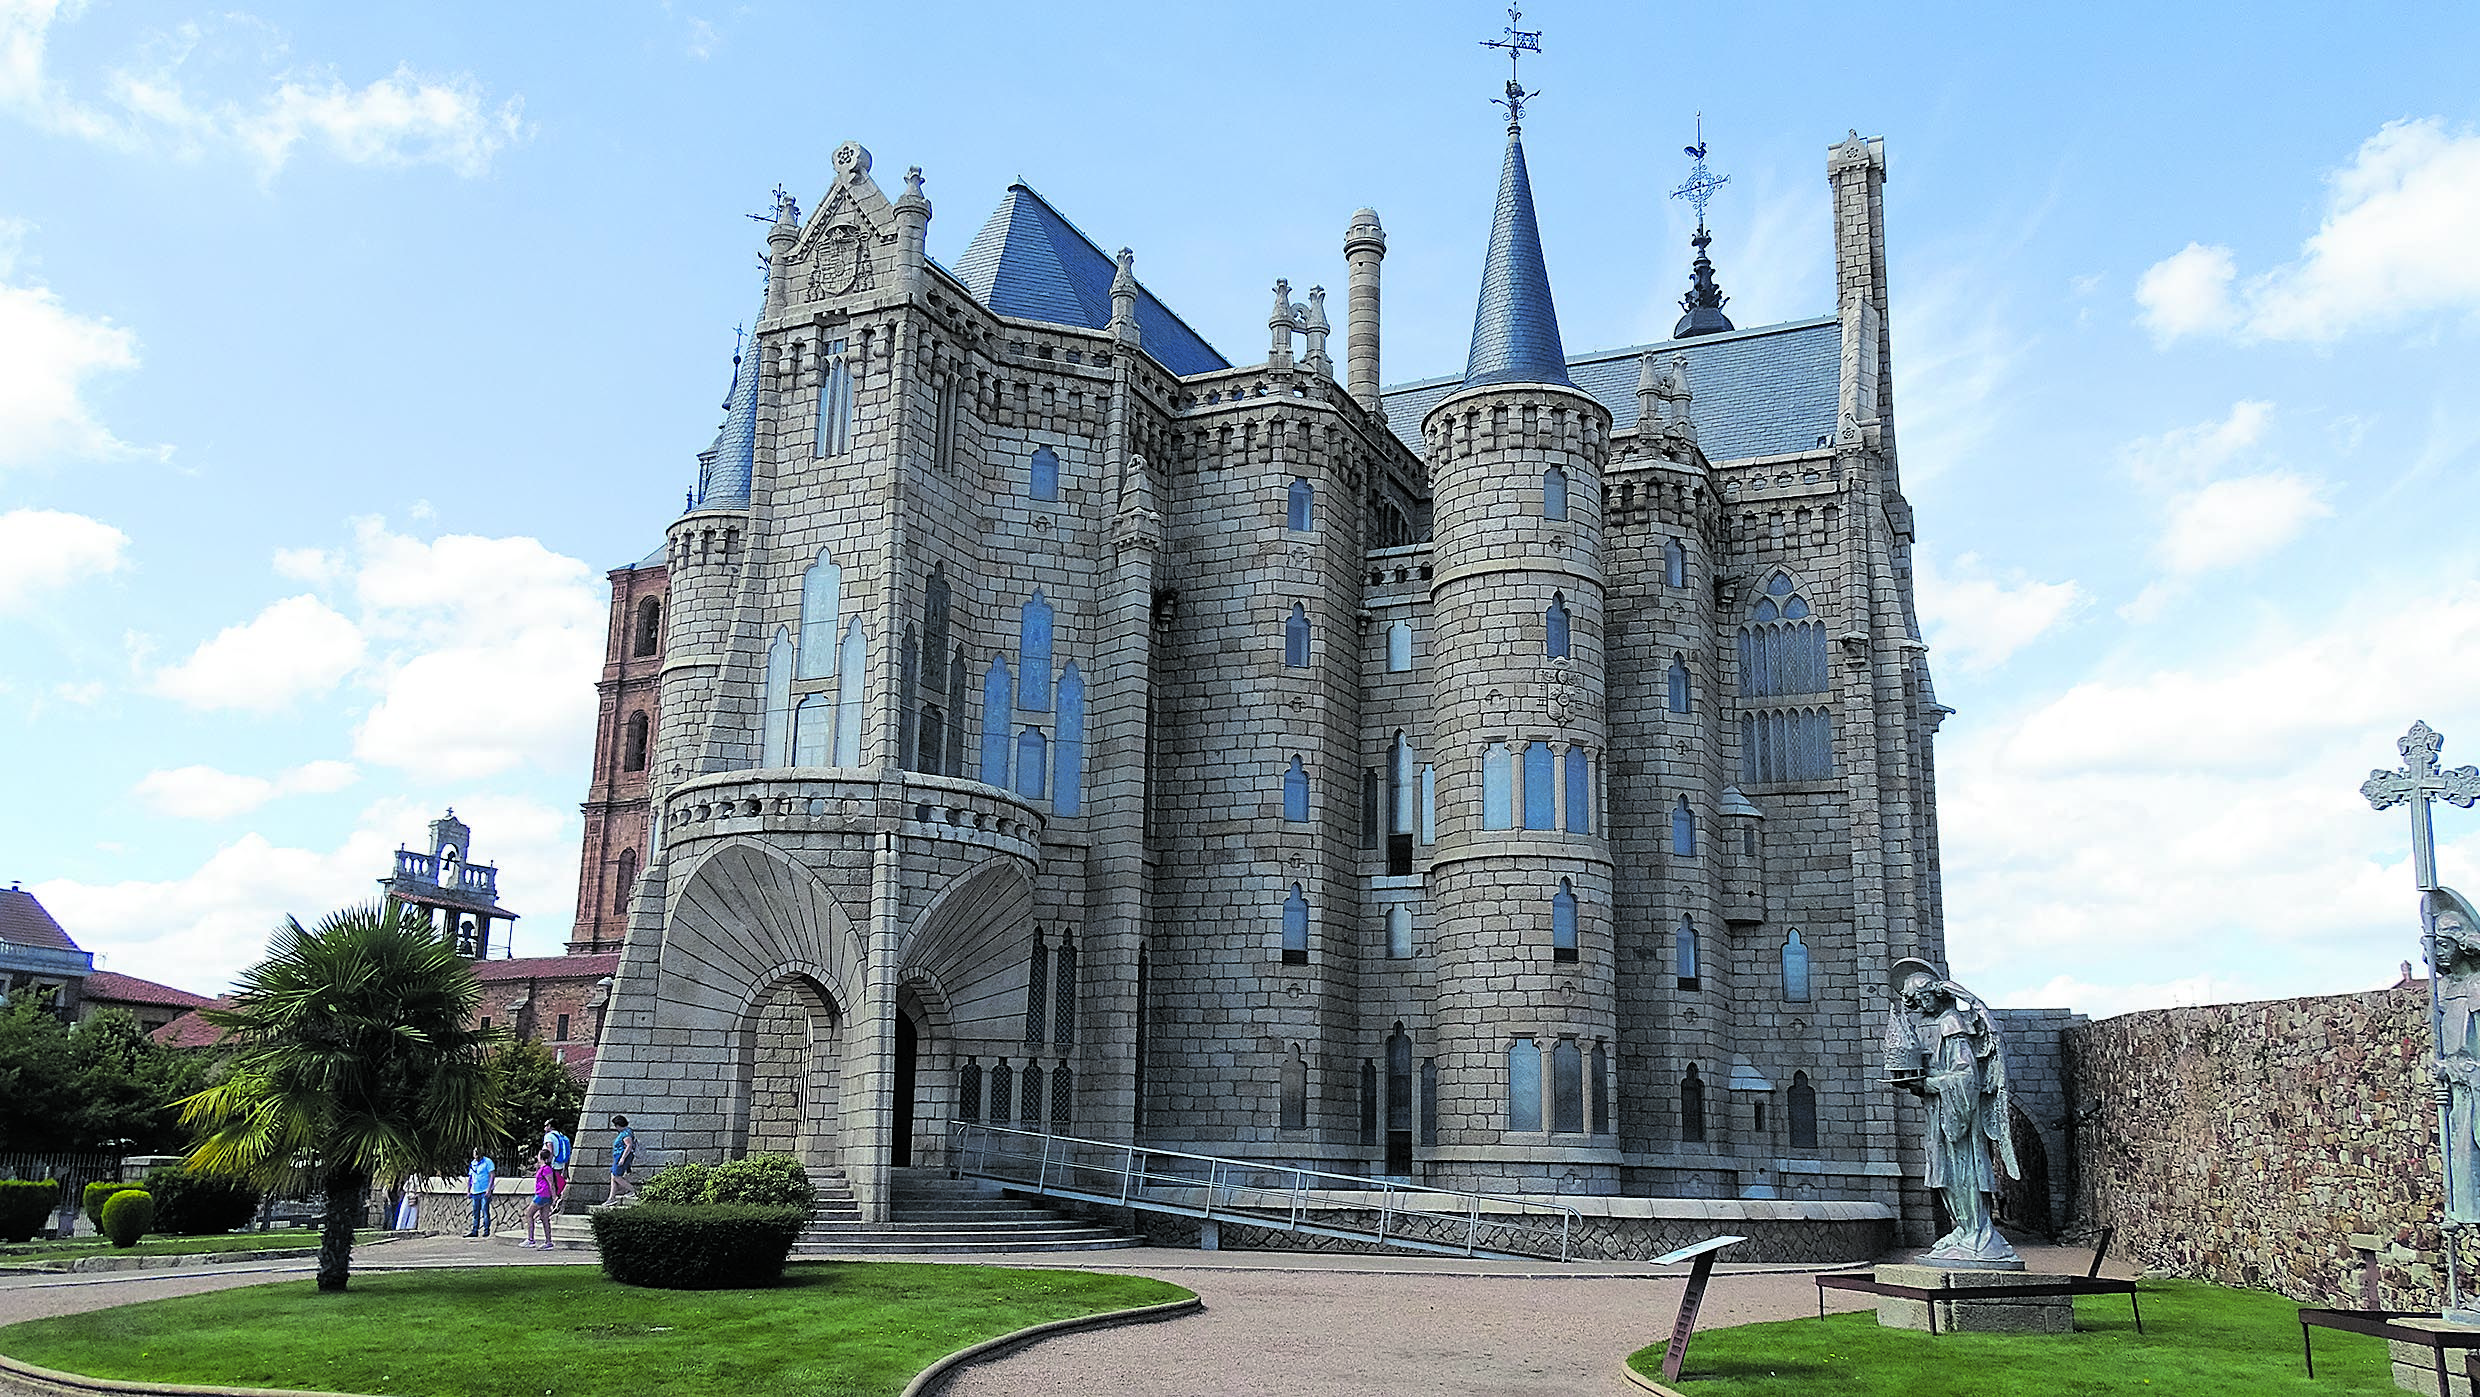 Una imagen del Palacio Episcopal de Astorga, monumento arquitectónico del catalán Antonio Gaudí. | L.N.C.